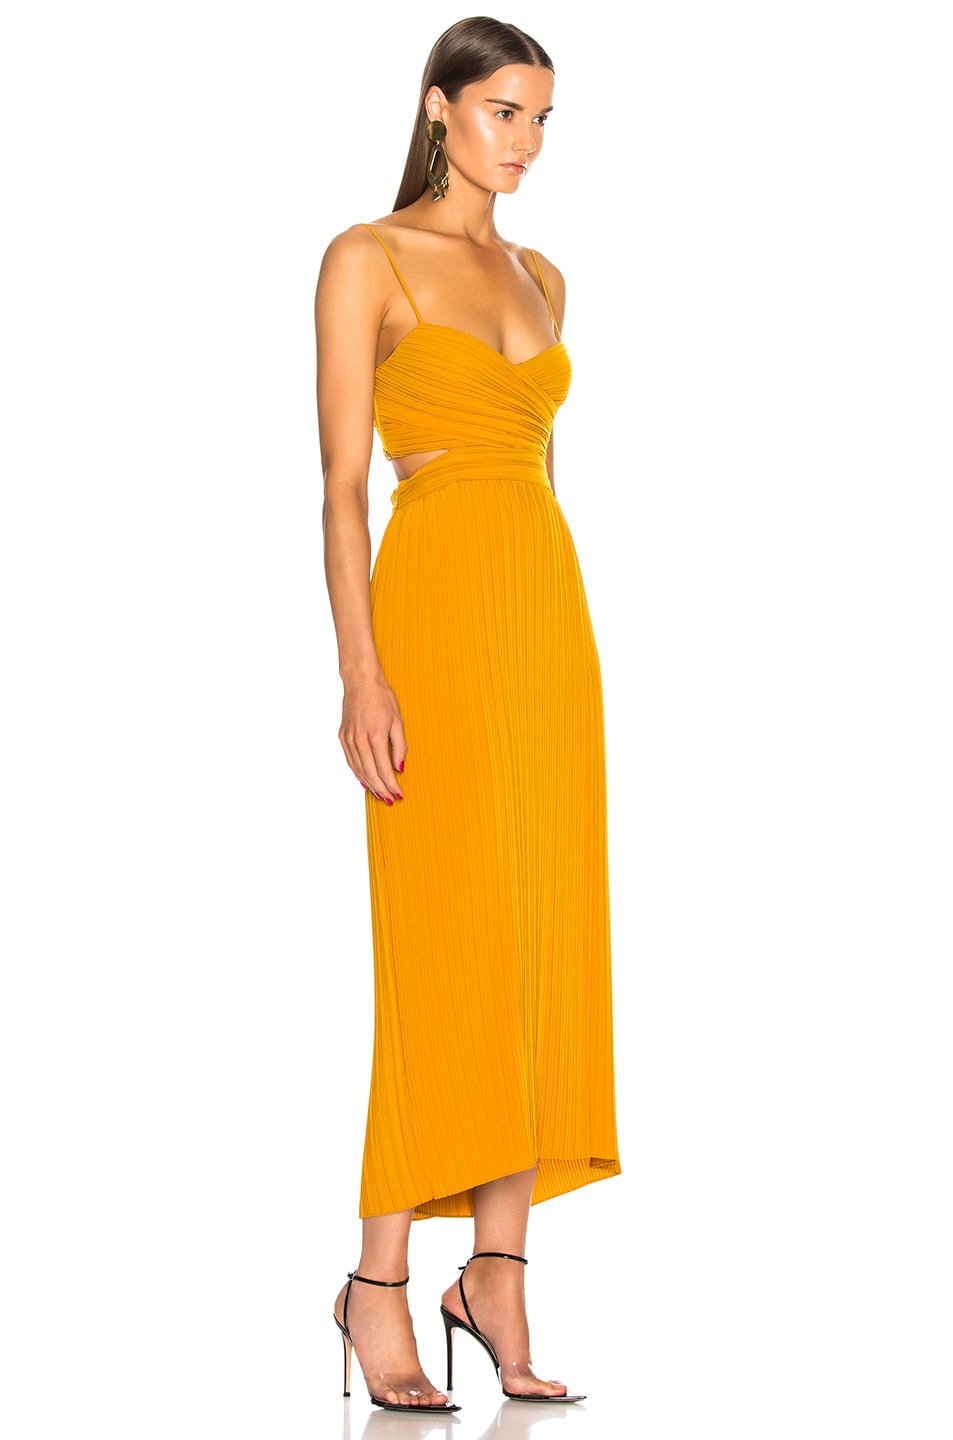 A.L.C. Sienna Dress in Marigold | FWRD